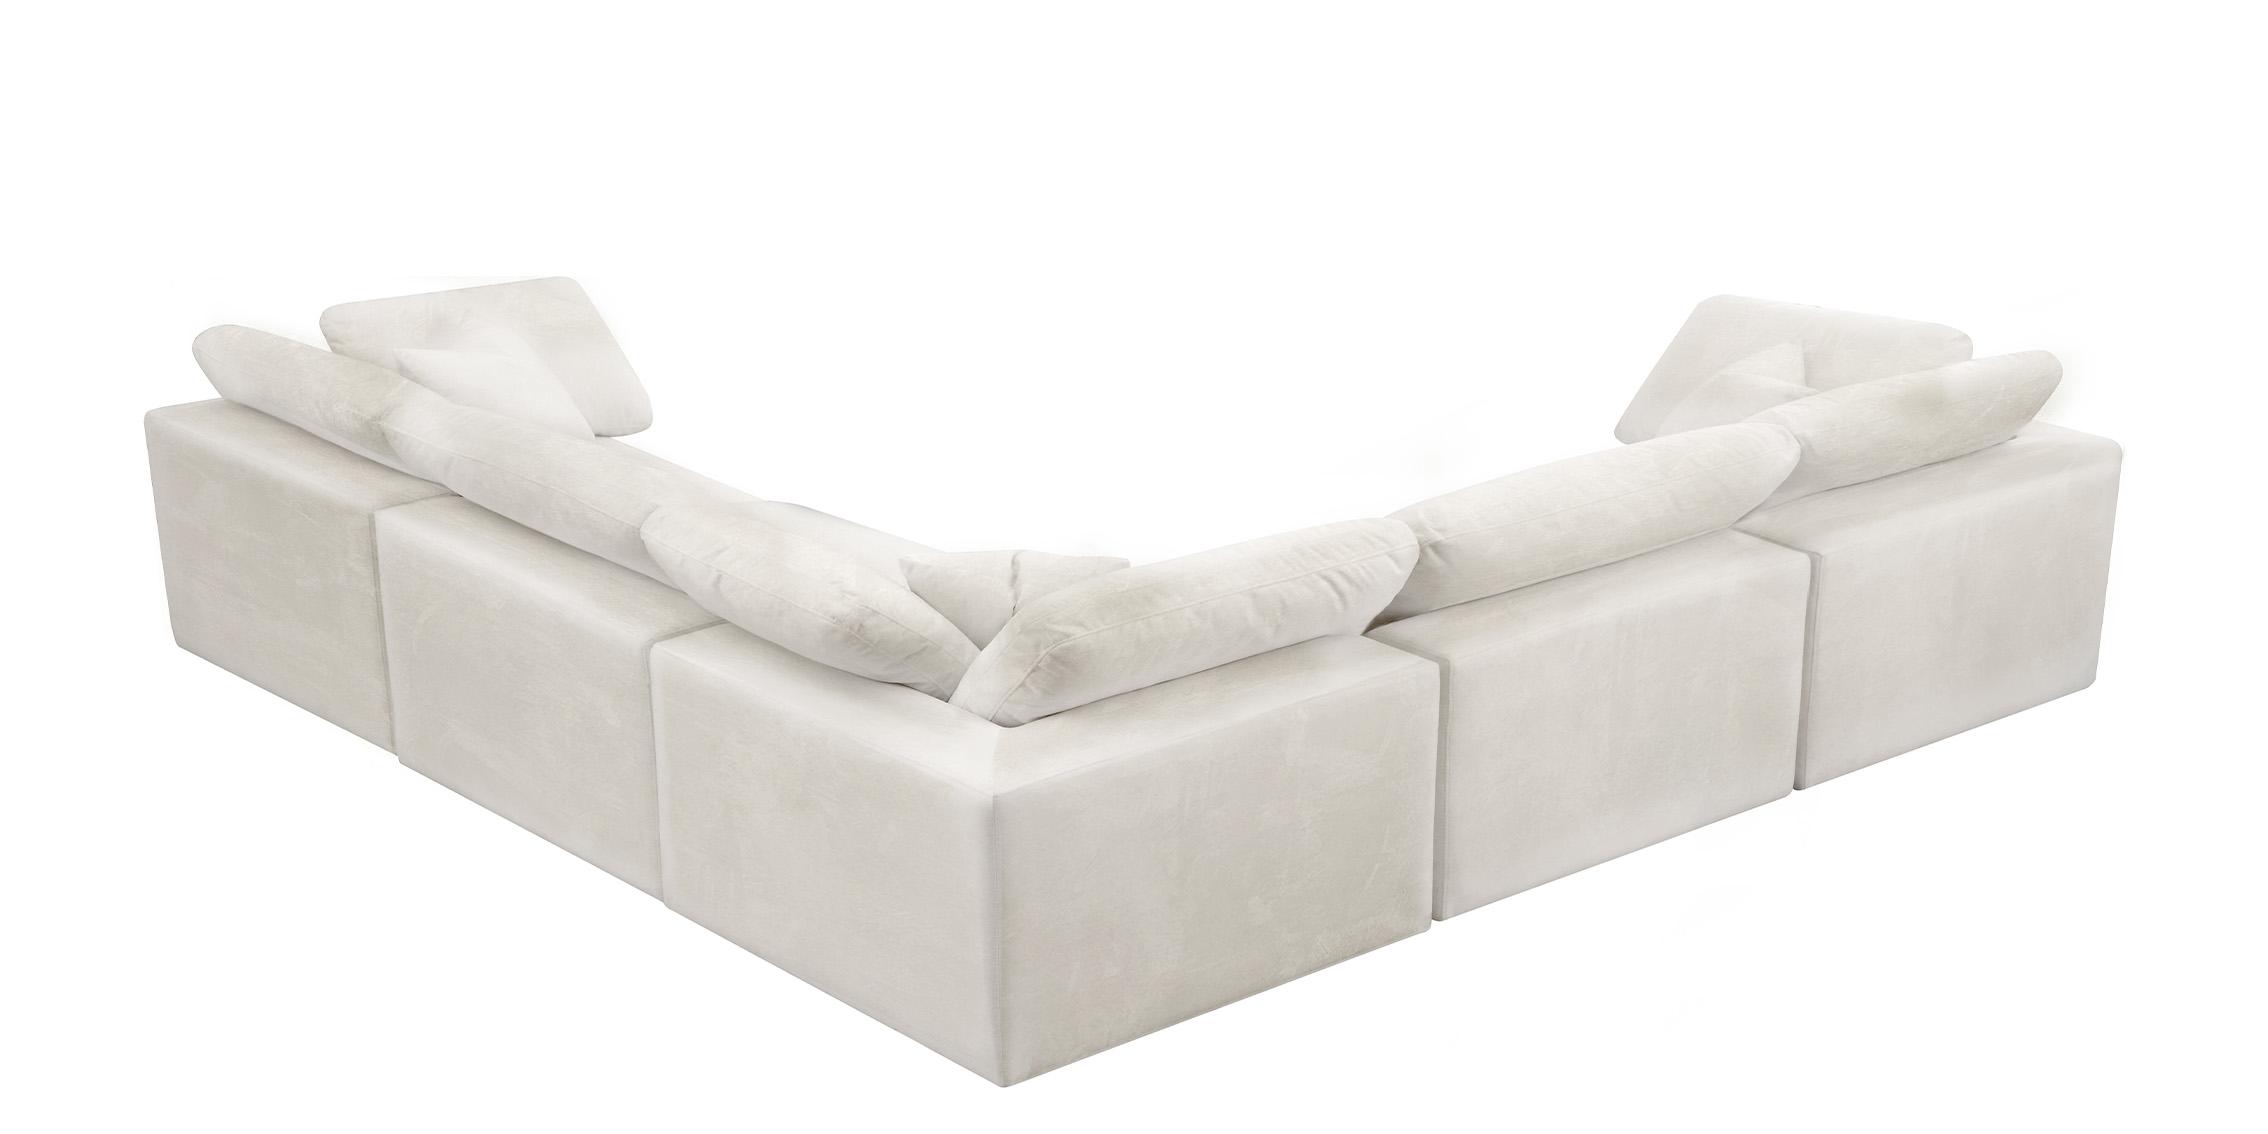 

    
Meridian Furniture 634Cream-Sec5C Modular Sectional Cream 634Cream-Sec5C
